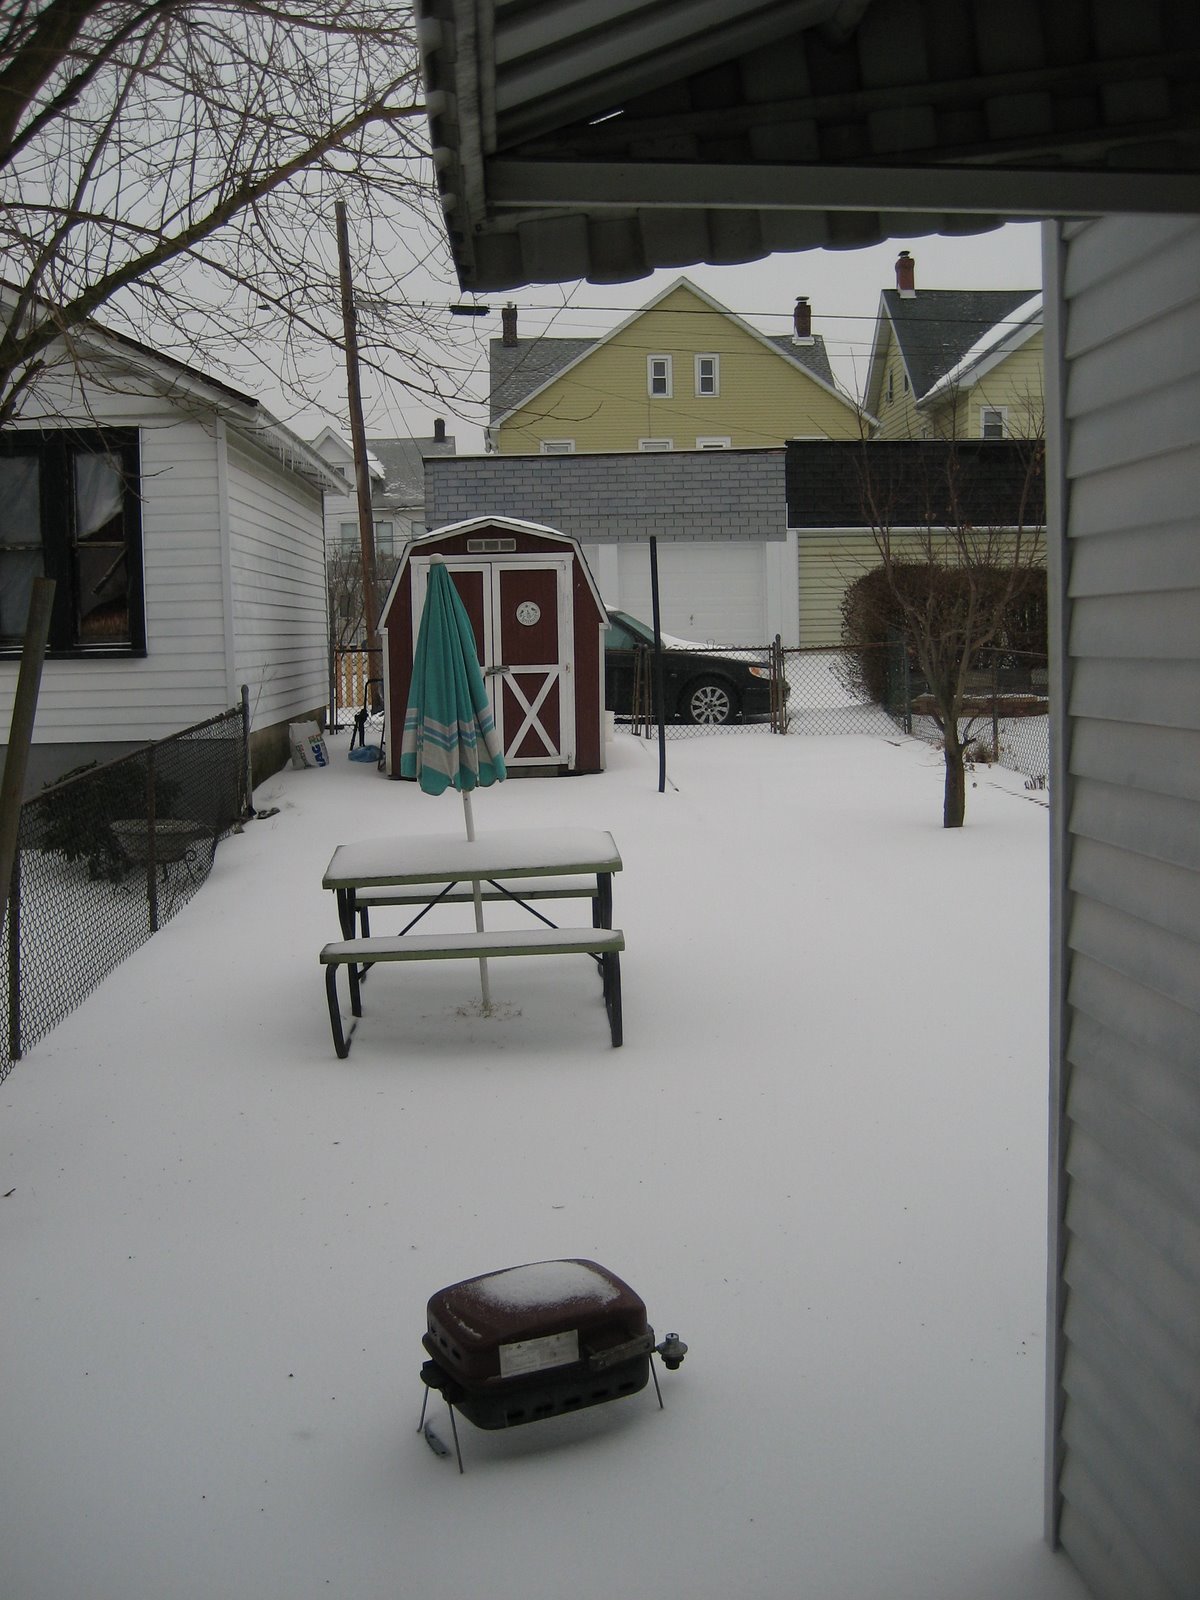 [Snowy+backyard.jpg]